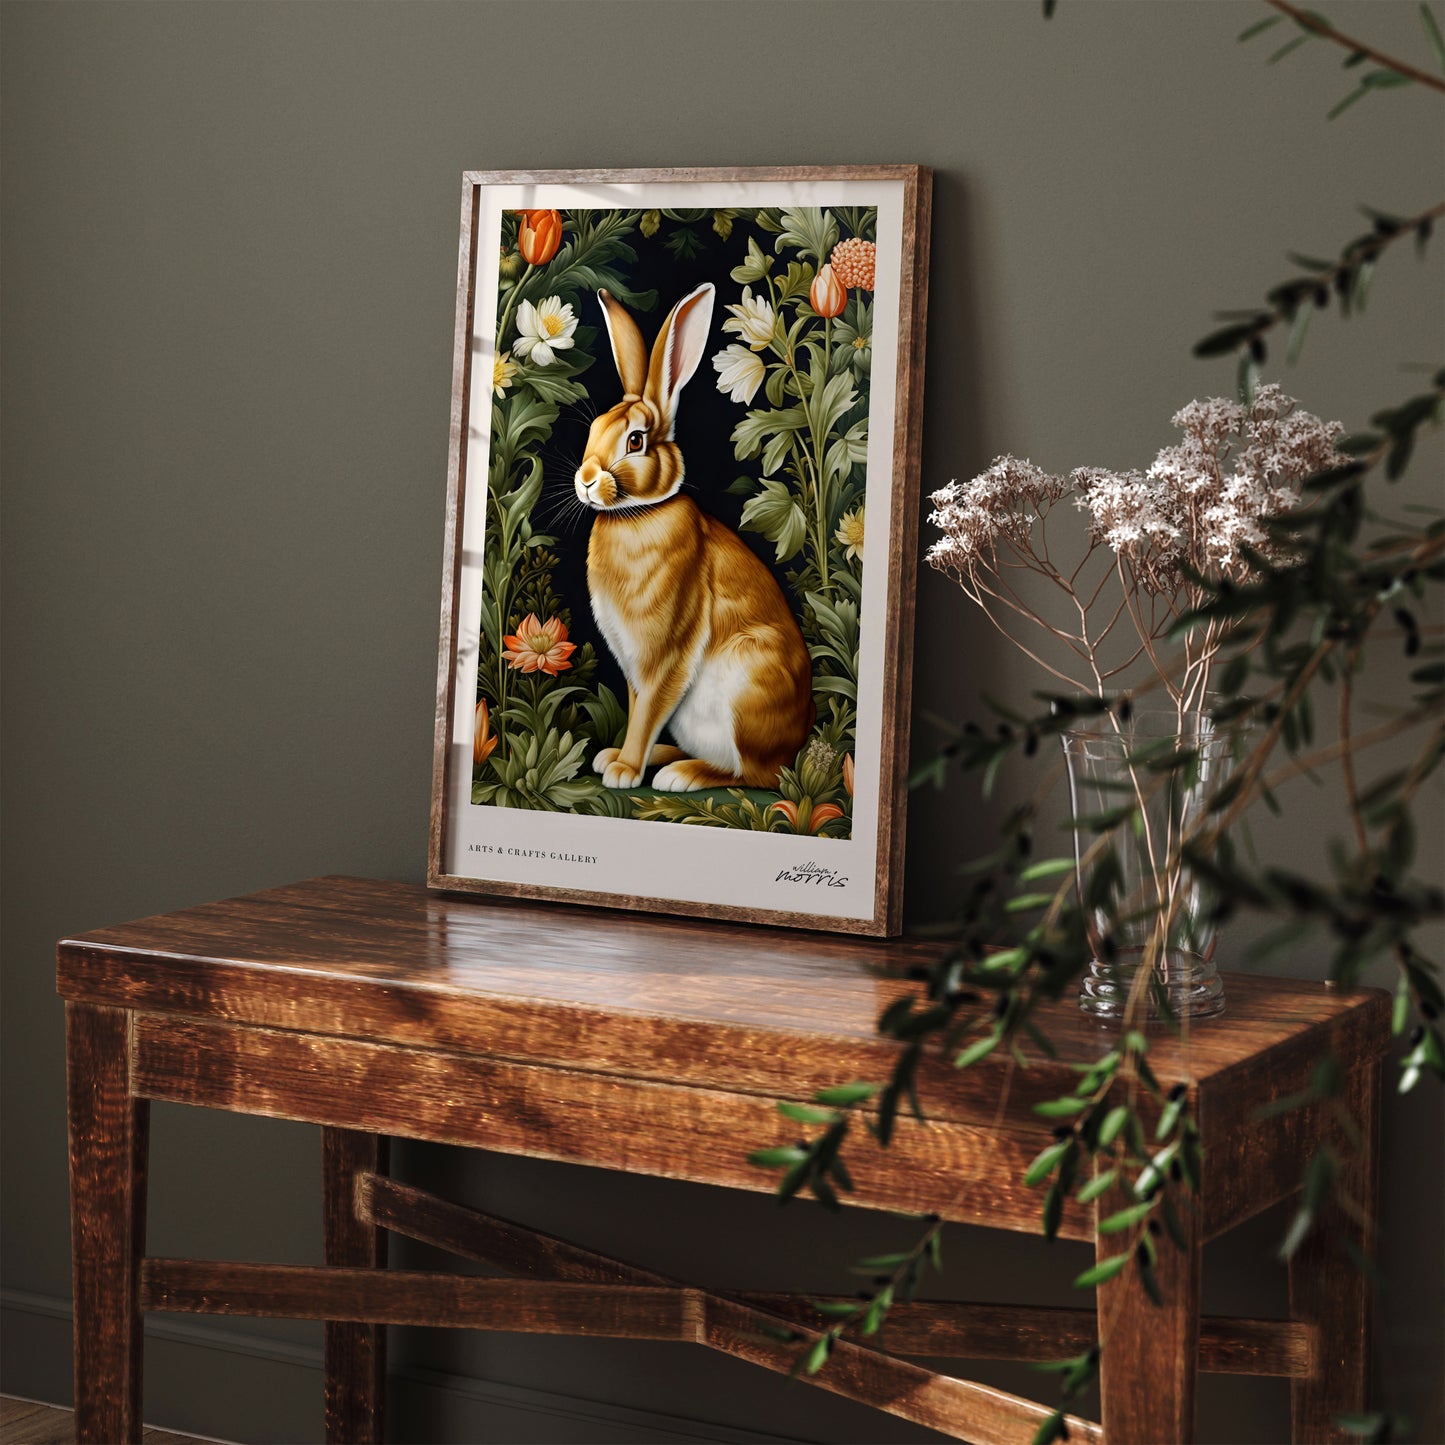 Cute Rabbit William Morris Poster